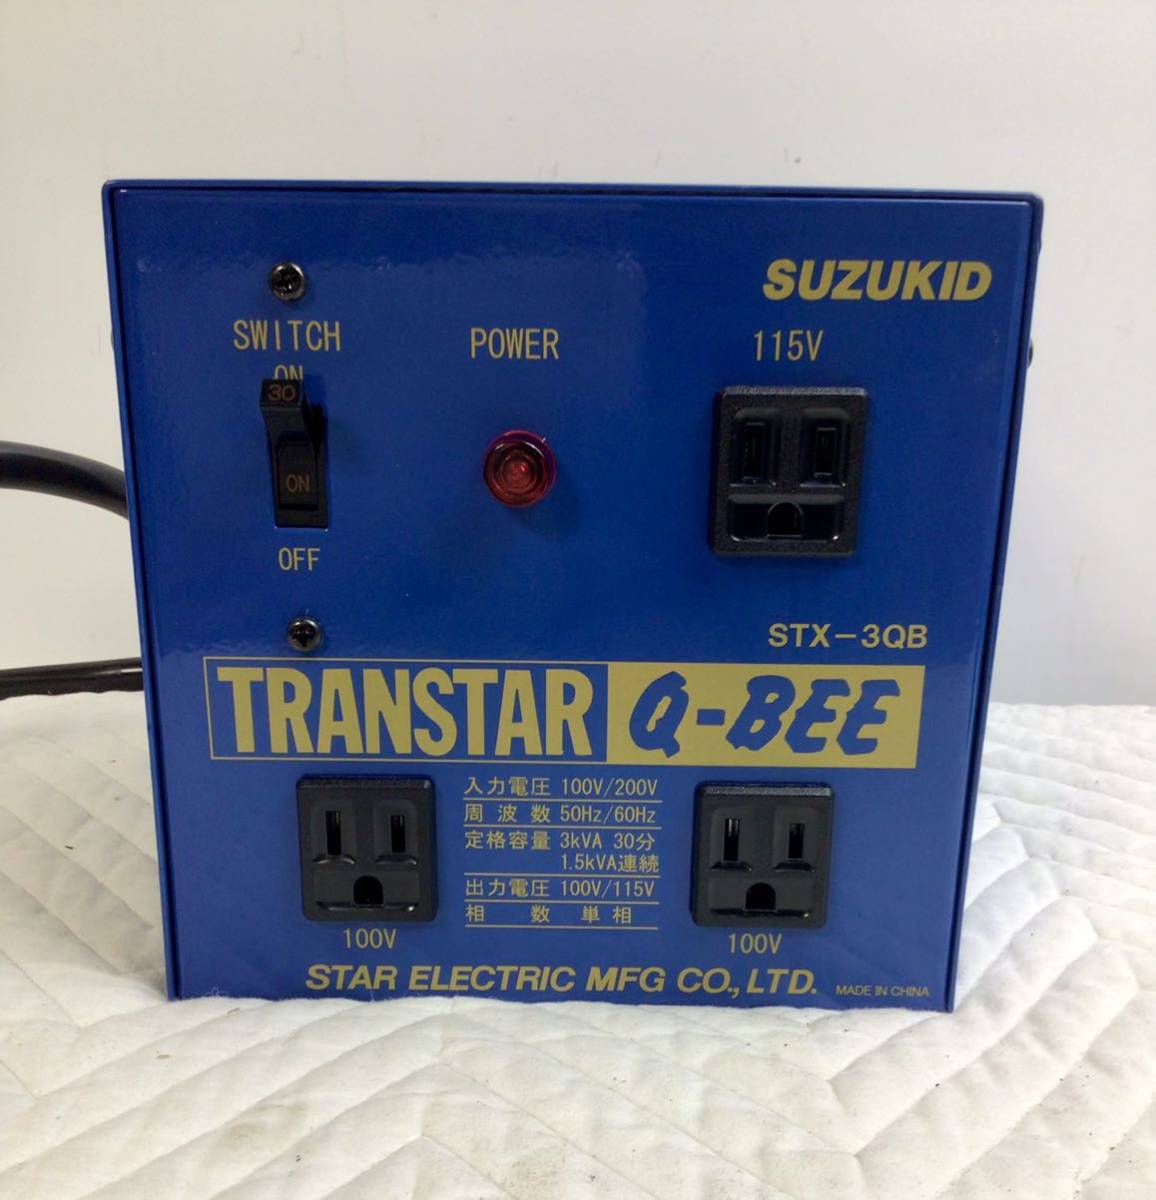 ☆151☆SUZUKID STX-3QB TRANSTAR Q-8EE 昇圧/降圧兼用 ポータブル変圧器